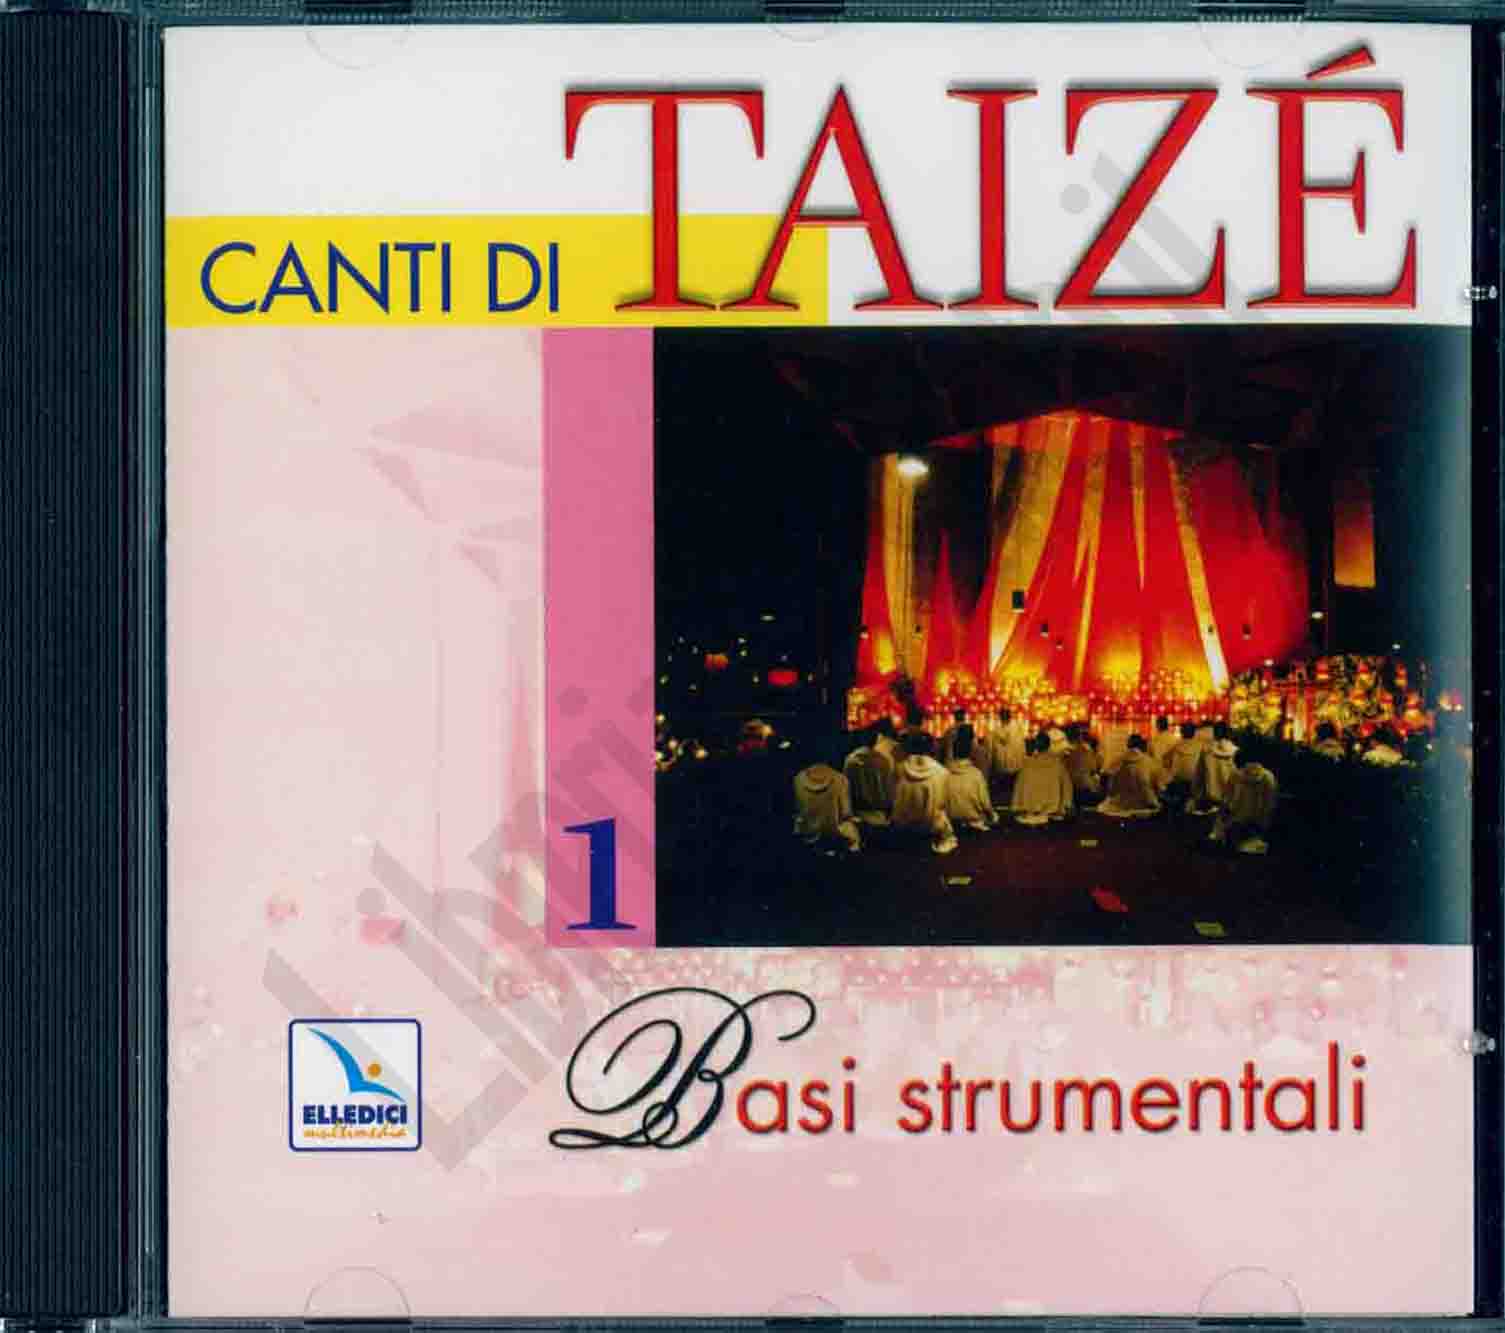 Audio Cd Comunita' Di Taize' (Cur.) - Canti Di Taize' 1 Basi Strumentali NUOVO SIGILLATO, EDIZIONE DEL 31/12/2005 DISPO ENTRO UN MESE, SU ORDINAZIONE